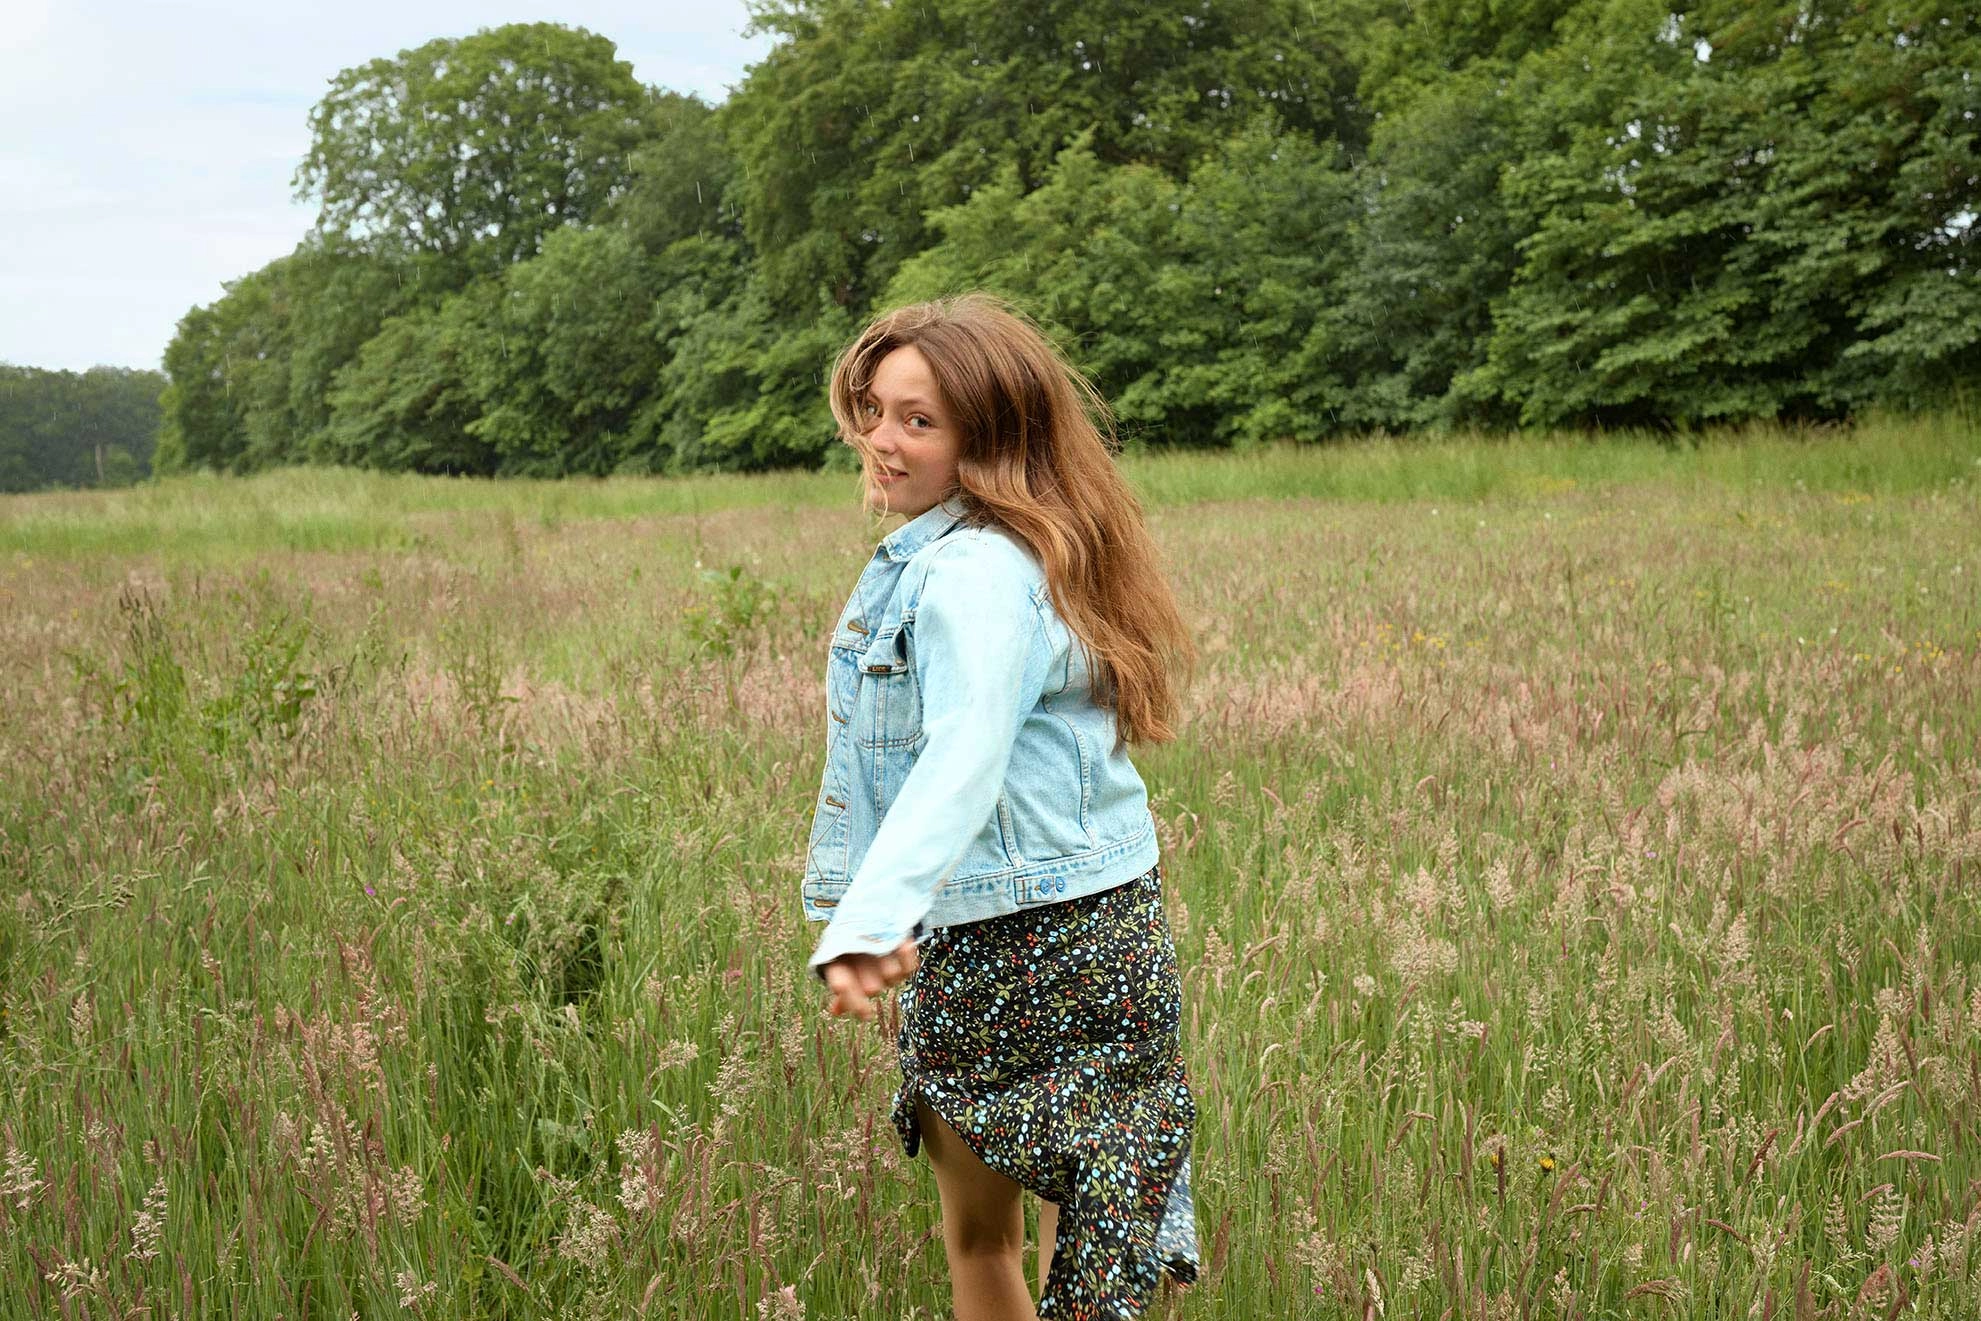 En pige løber i en blomstermark, hun smiler og kigger tilbage mod kameraet